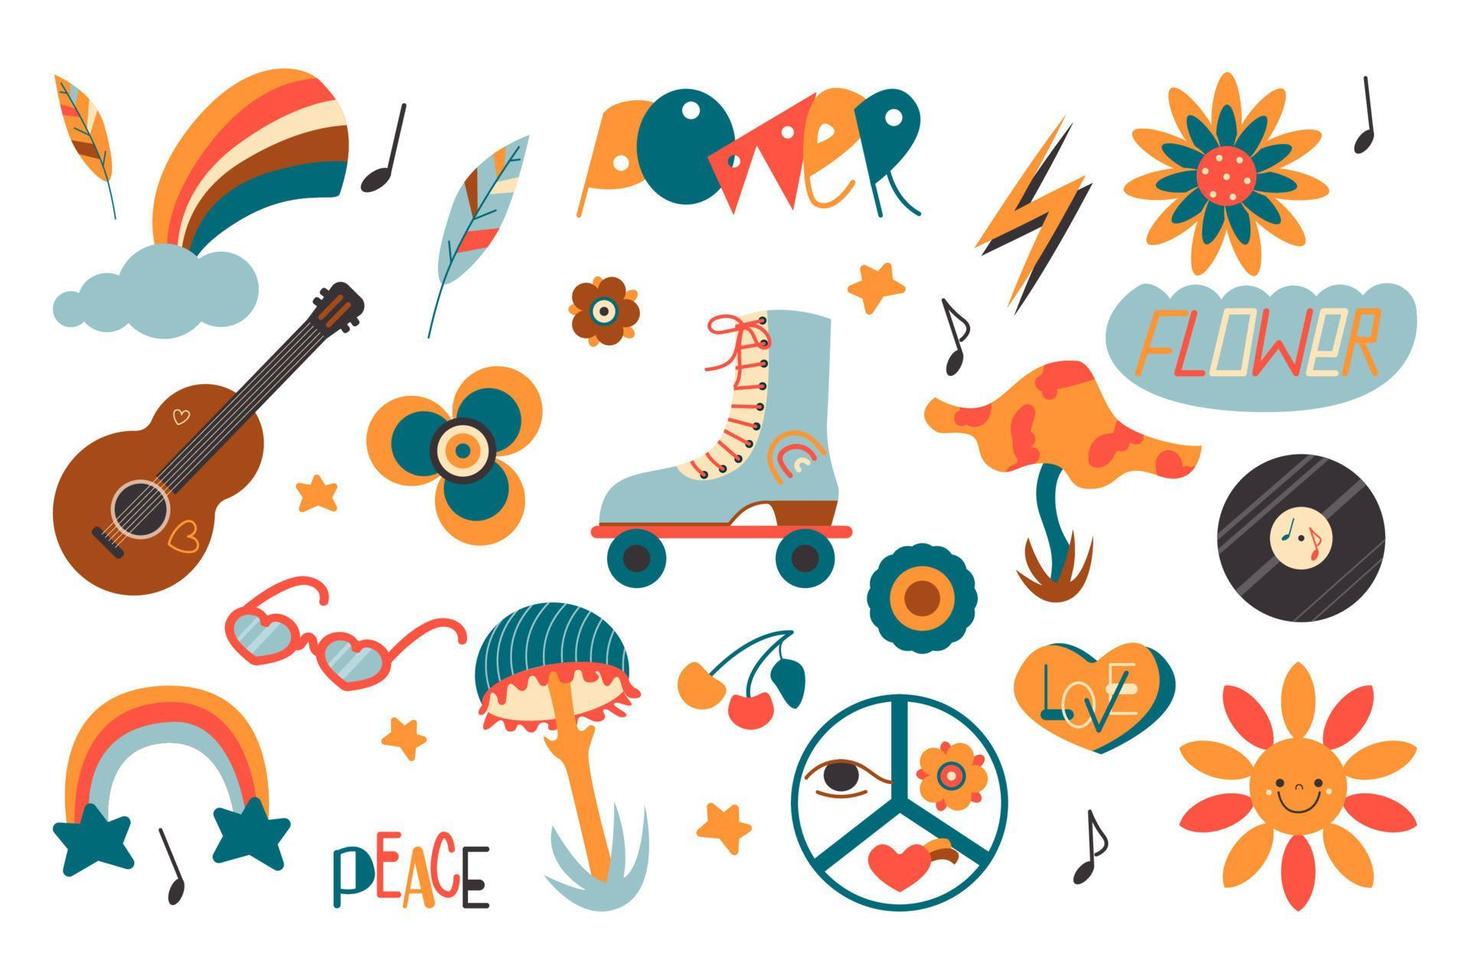 icônes colorées rétro hippie définies dans le style de dessin animé. collection vintage d'éléments hipster. logo de signe de couleur des années 1970. illustration de vecteur plat isolé sur fond blanc